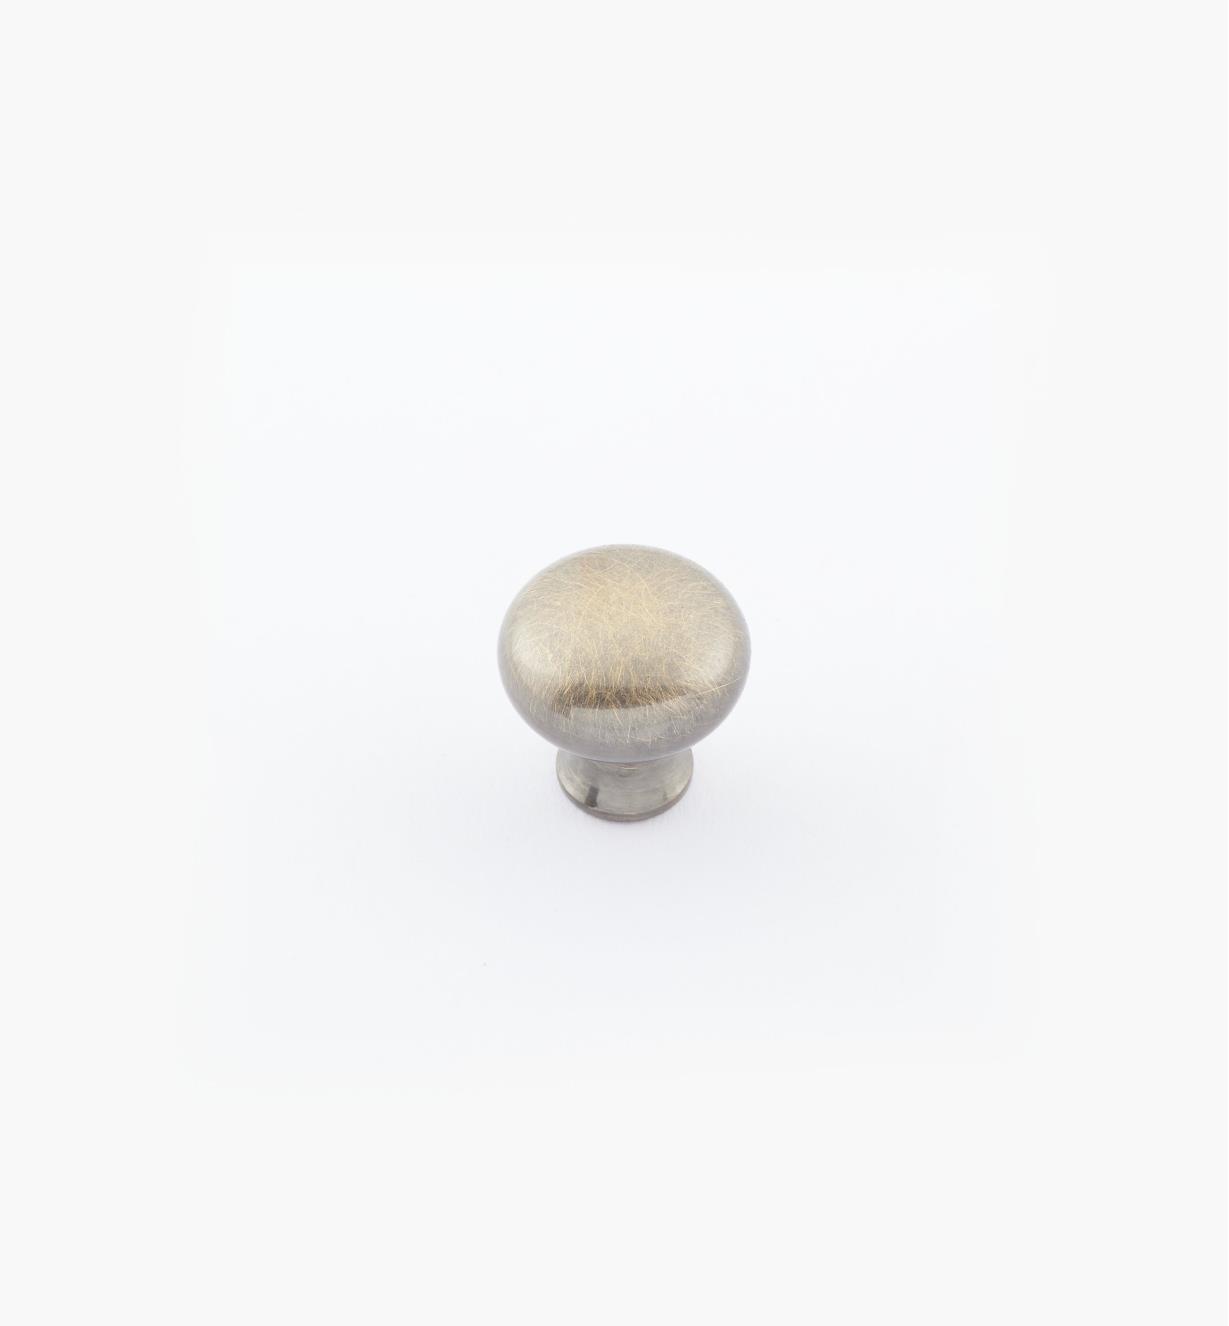 02W1411 - 1/2" × 1/2" Round Brass Knob, Antique Brass